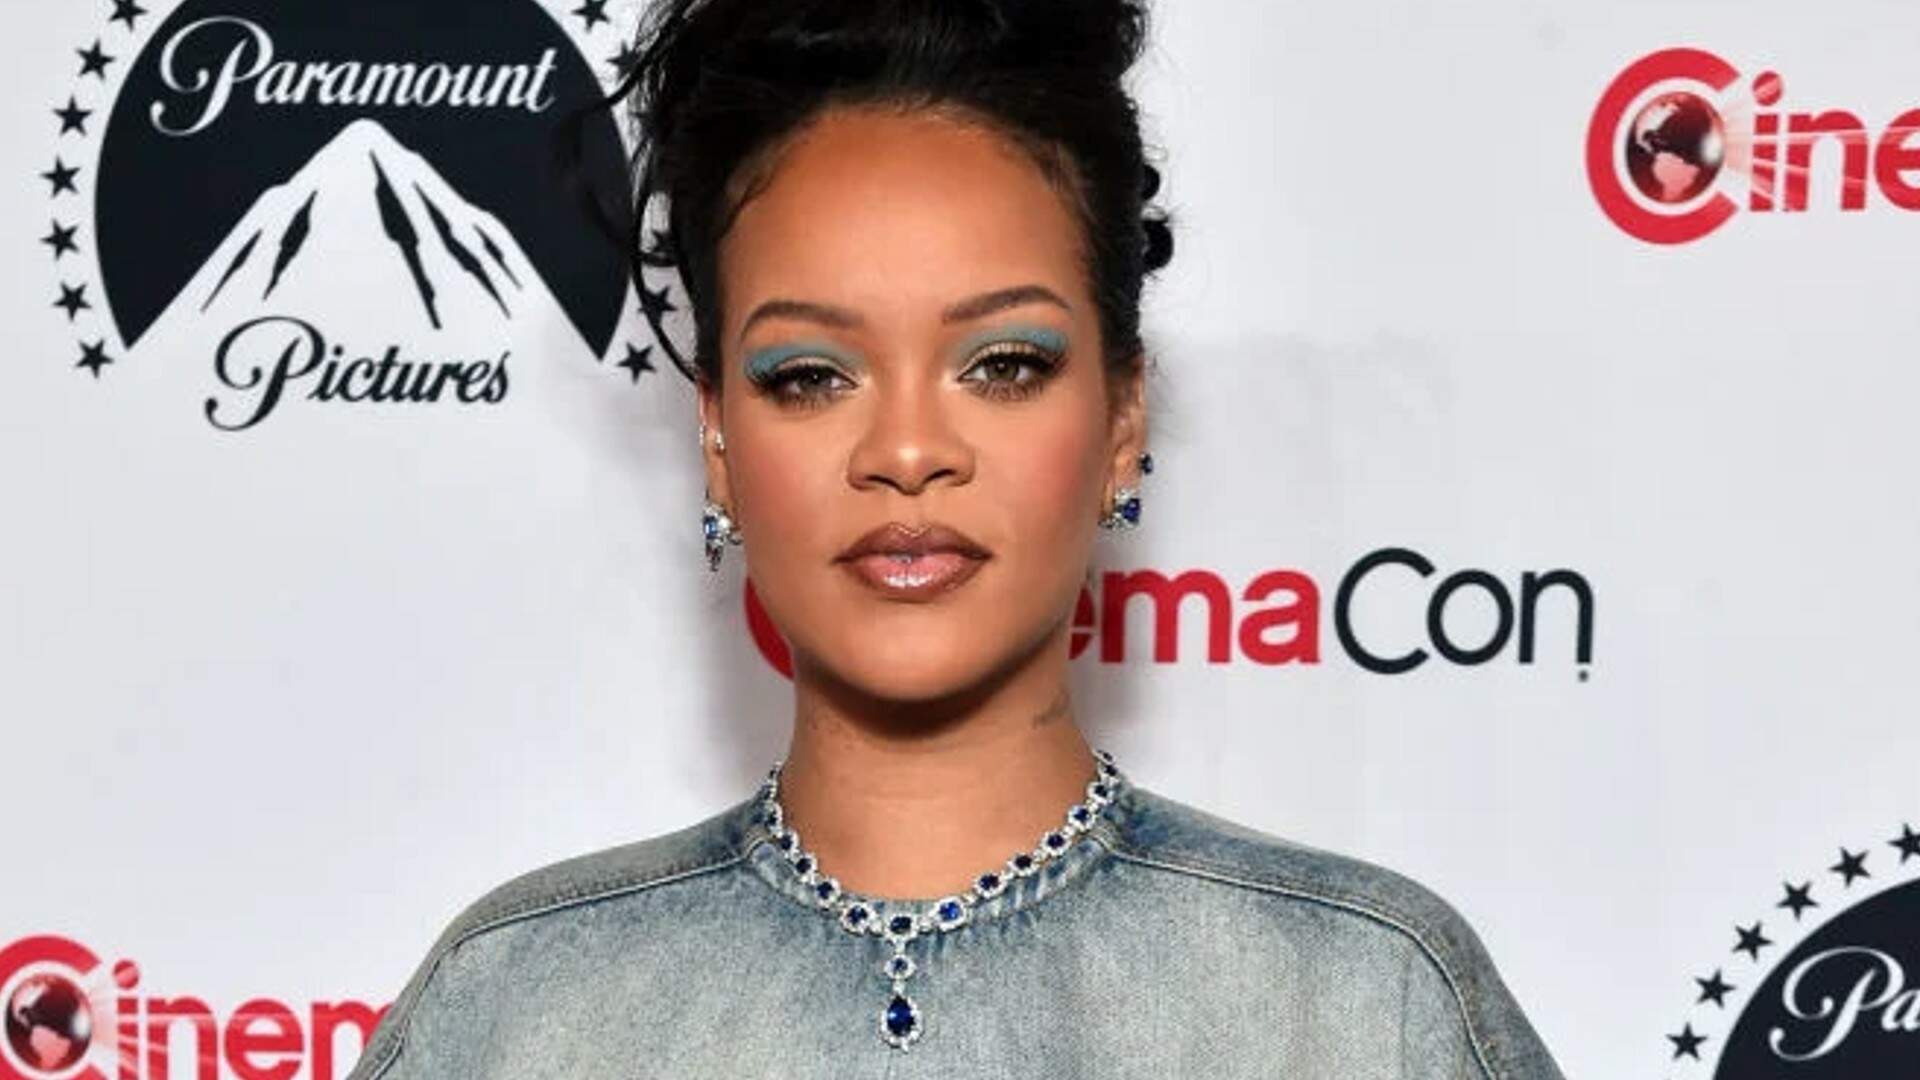 Rihanna nas telonas? Artista é confirmada em elenco da sequência de famoso filme infantil - Metropolitana FM